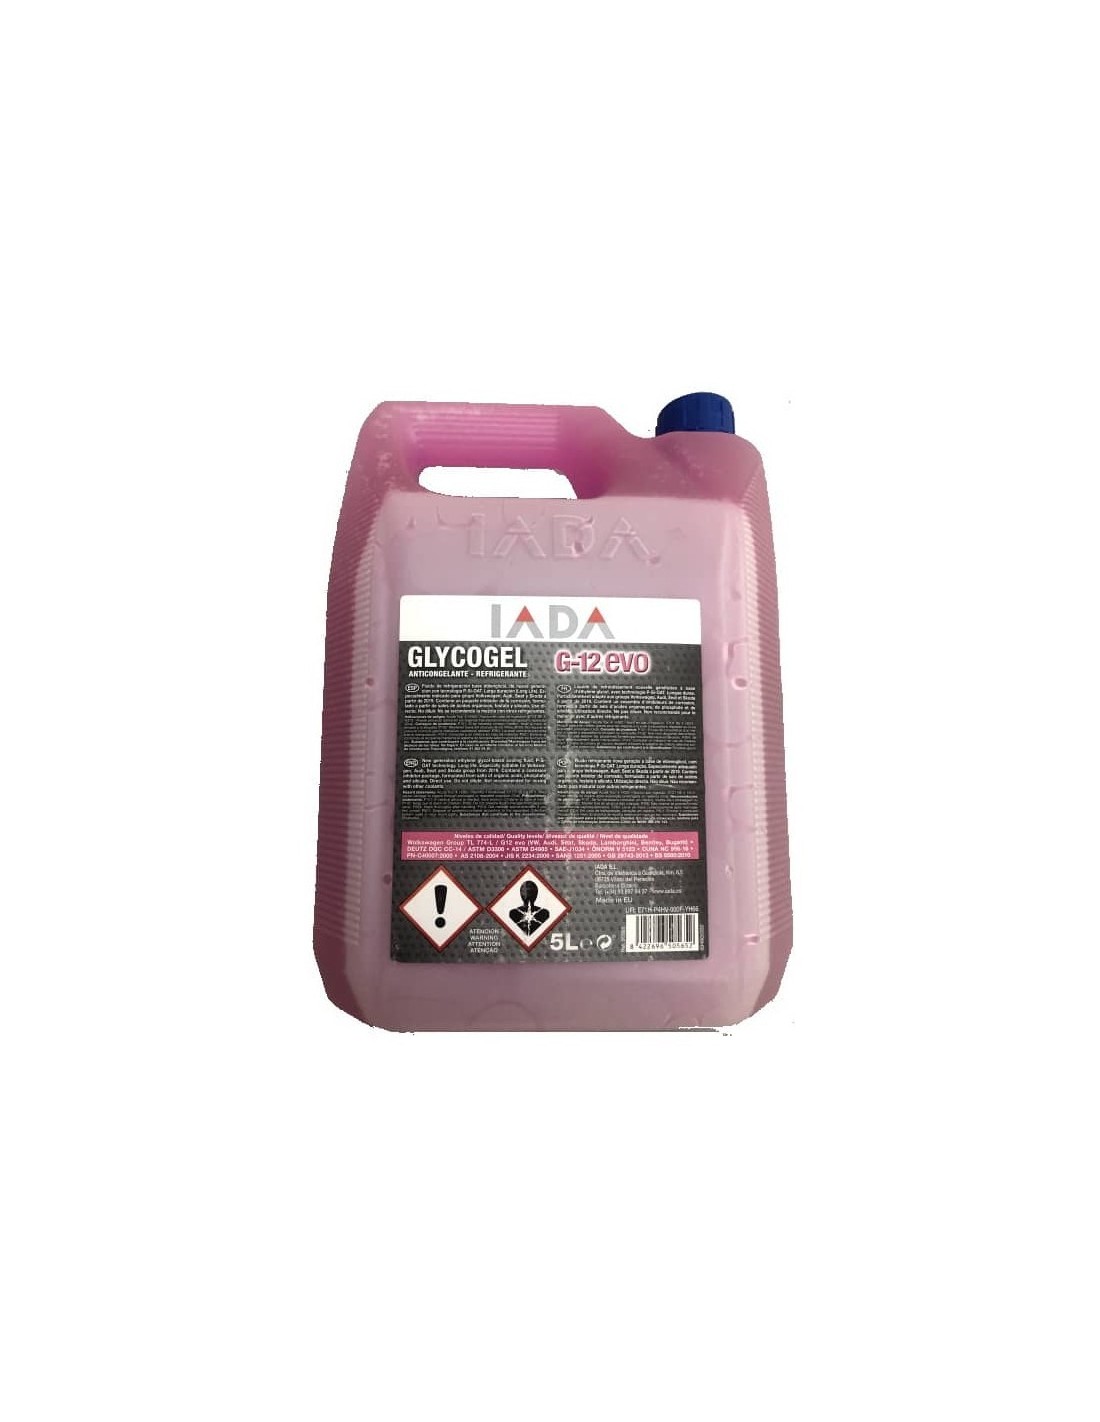 Anticongelante Glycogel G-12 EVO, IADA| 5 L- 19,90€-   Capacidad 5 Litros